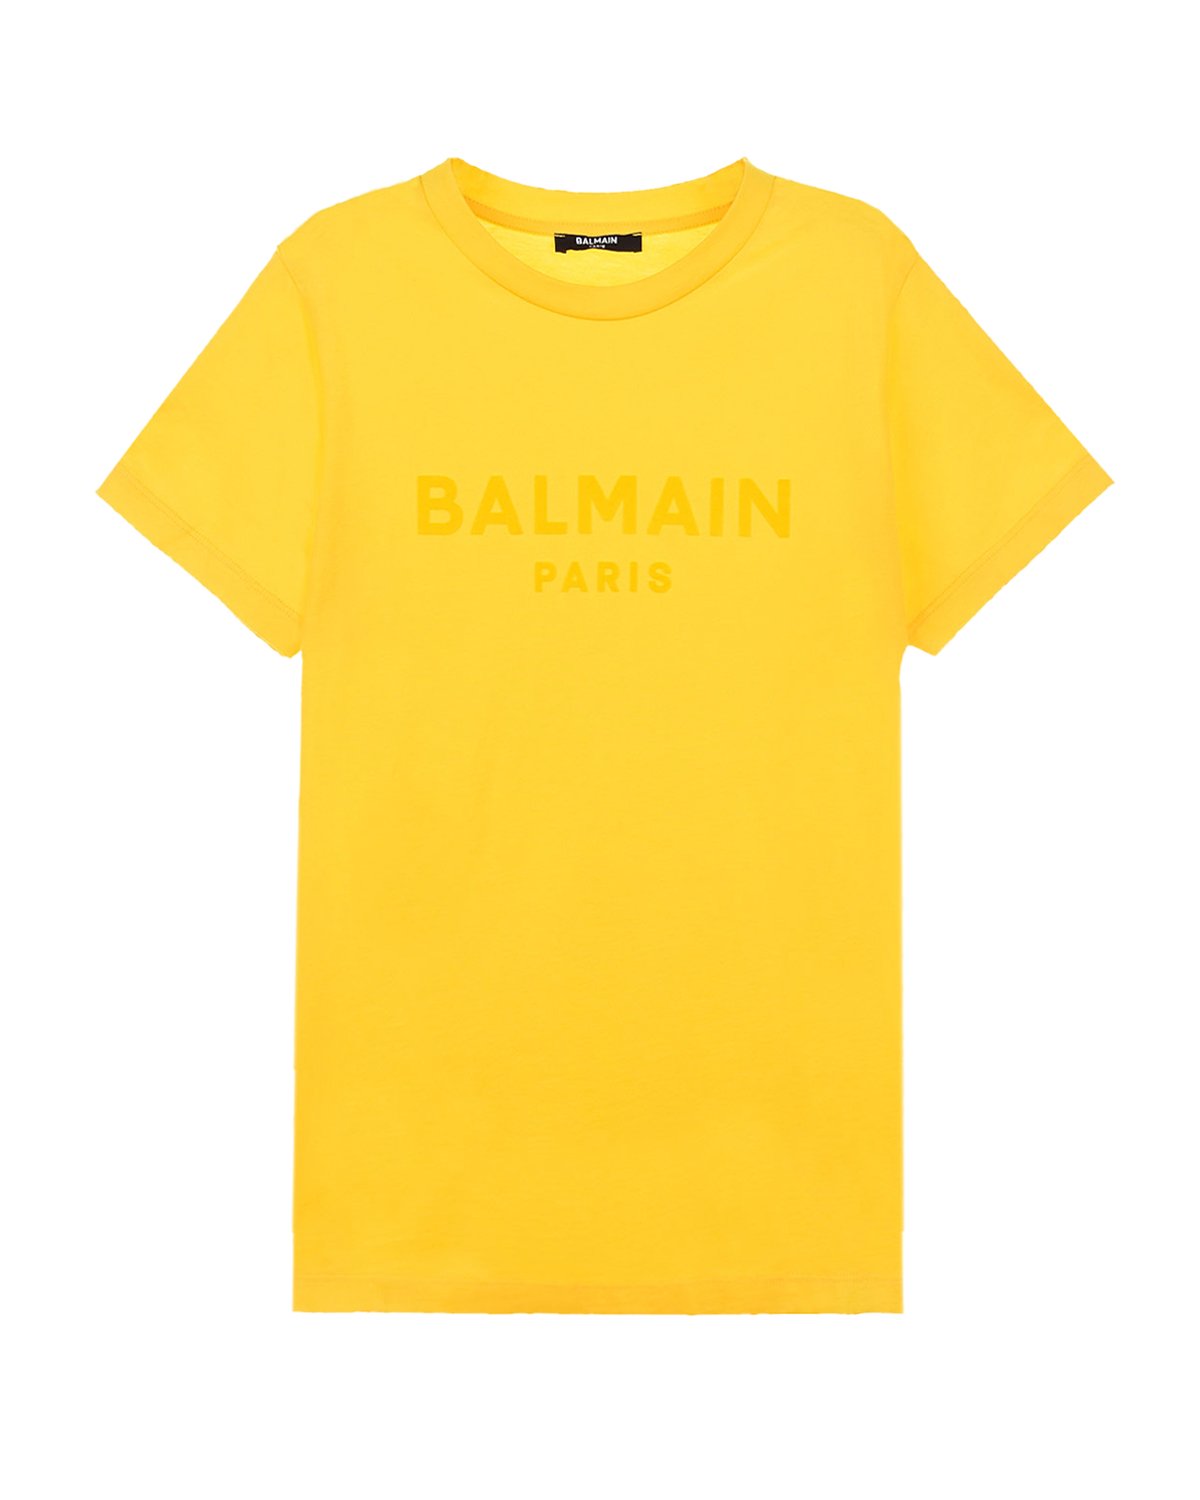 Где купить Желтая футболка с логотипом в тон Balmain детская Balmain 